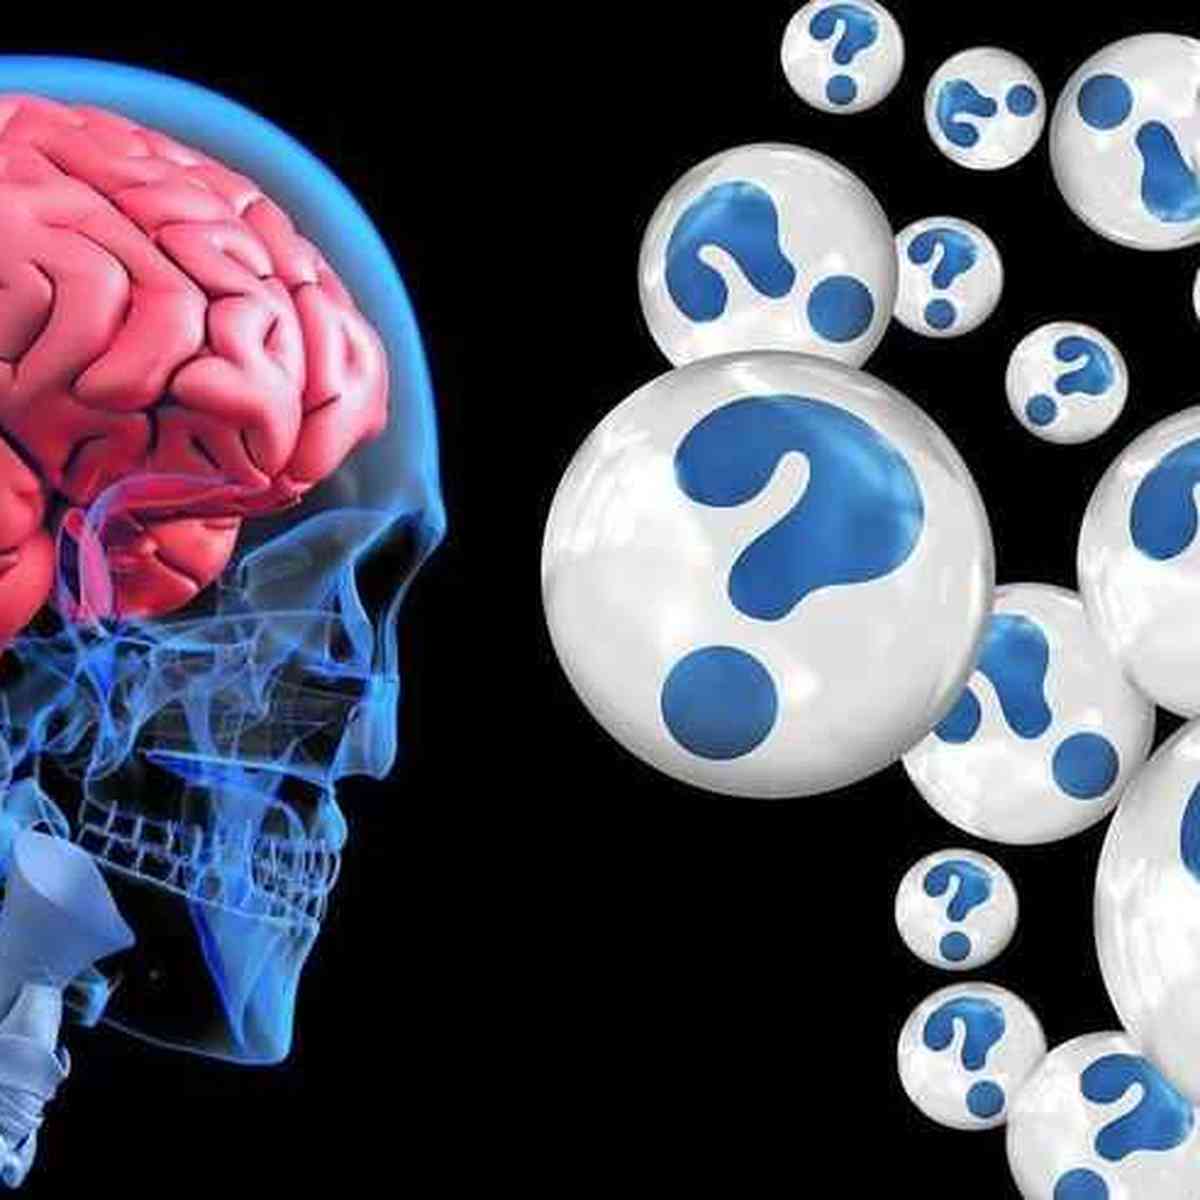 Jogar protege o cérebro do envelhecimento, mostra novo estudo